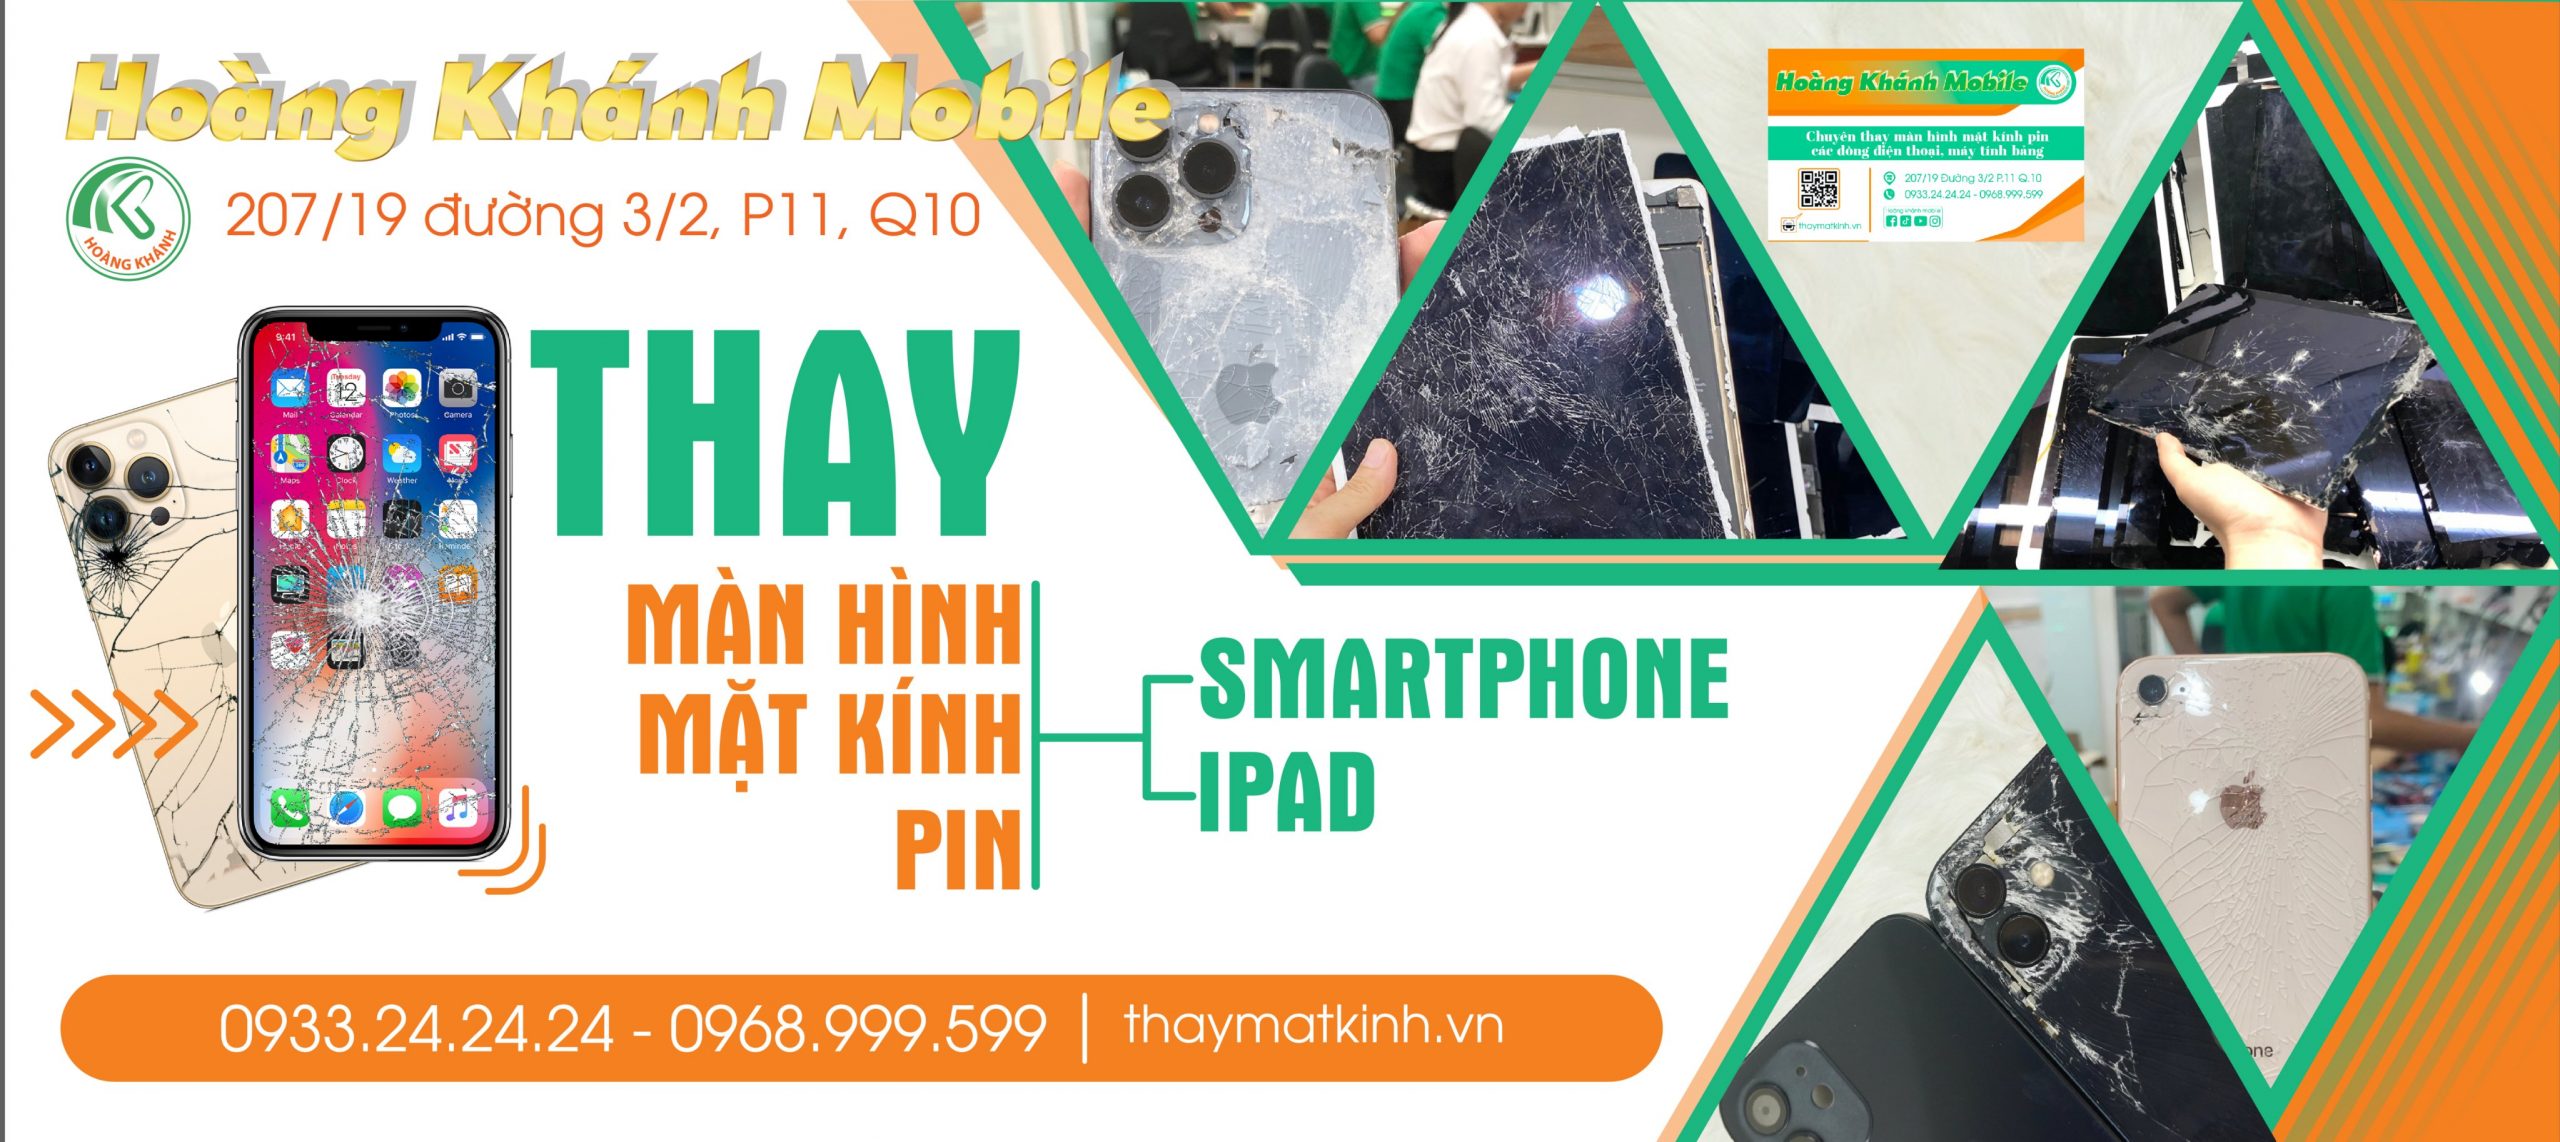 Công ty dịch vụ sửa chữa điện thoại uy tín Hoàng Khánh Mobile